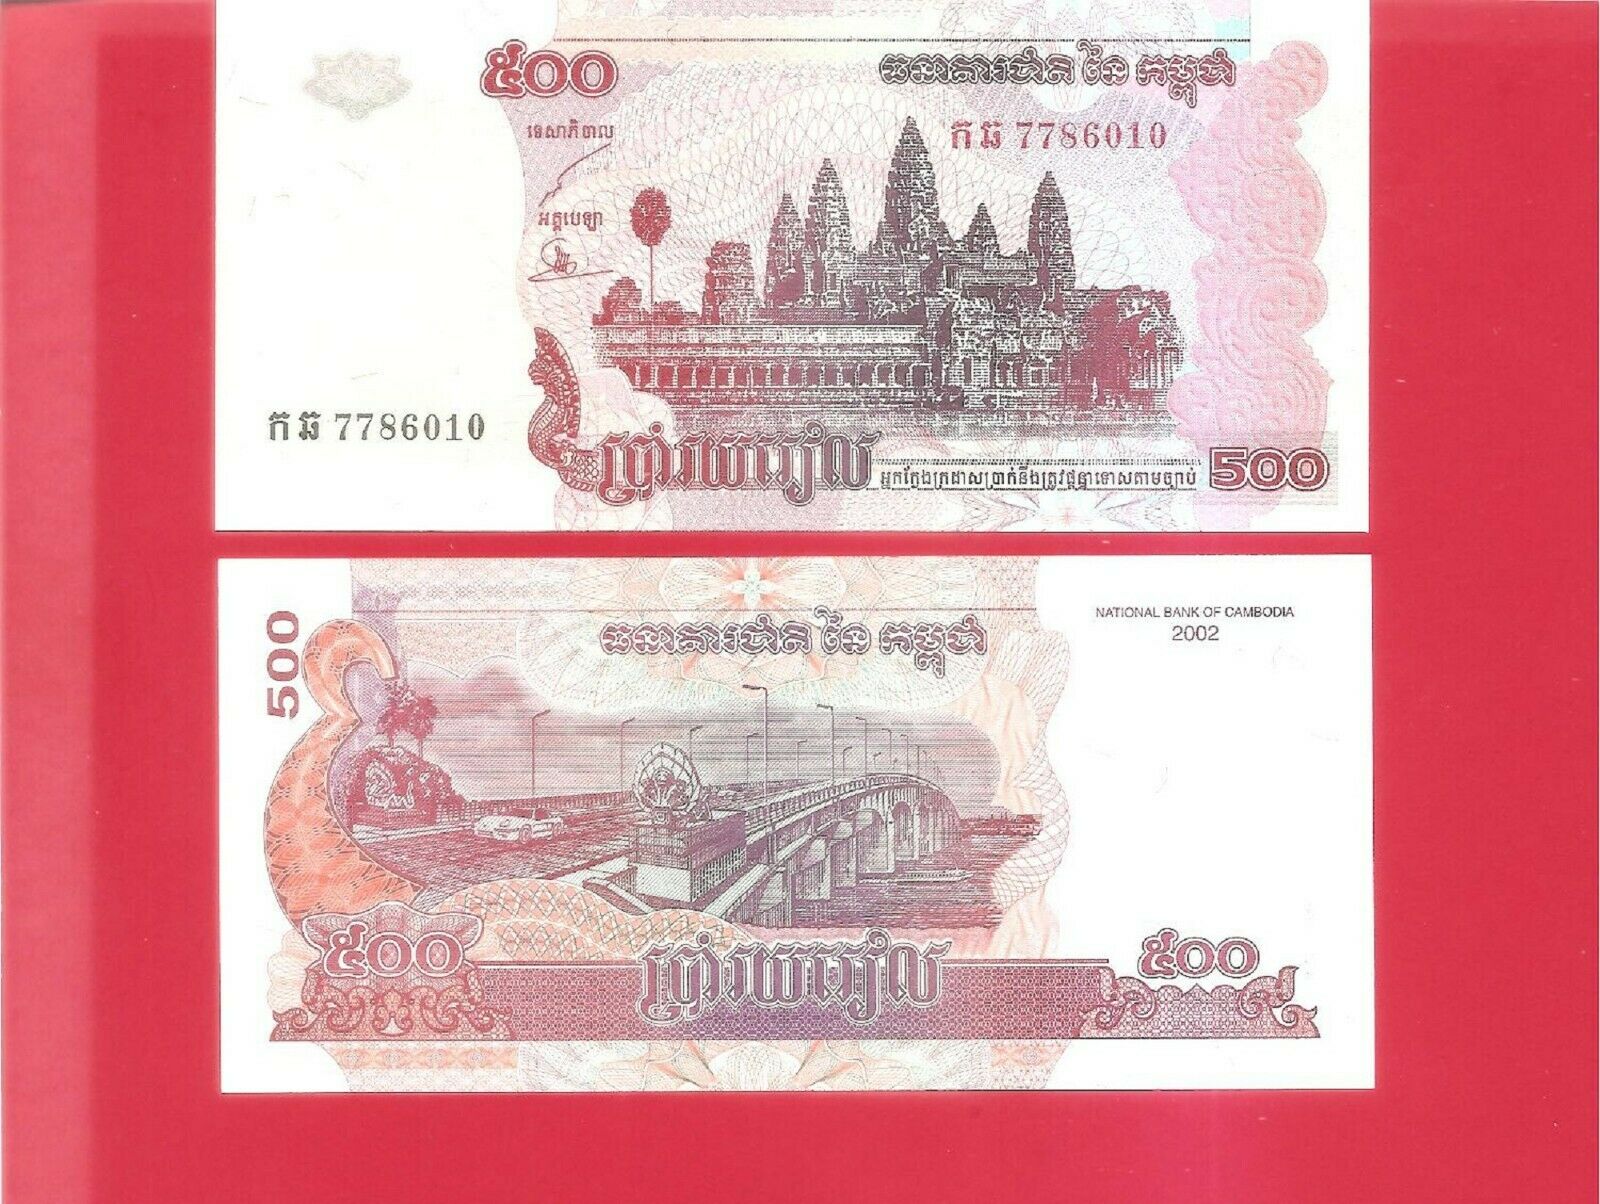 Cambodia 500 Riels 2002 Pick #54a Uncirculated